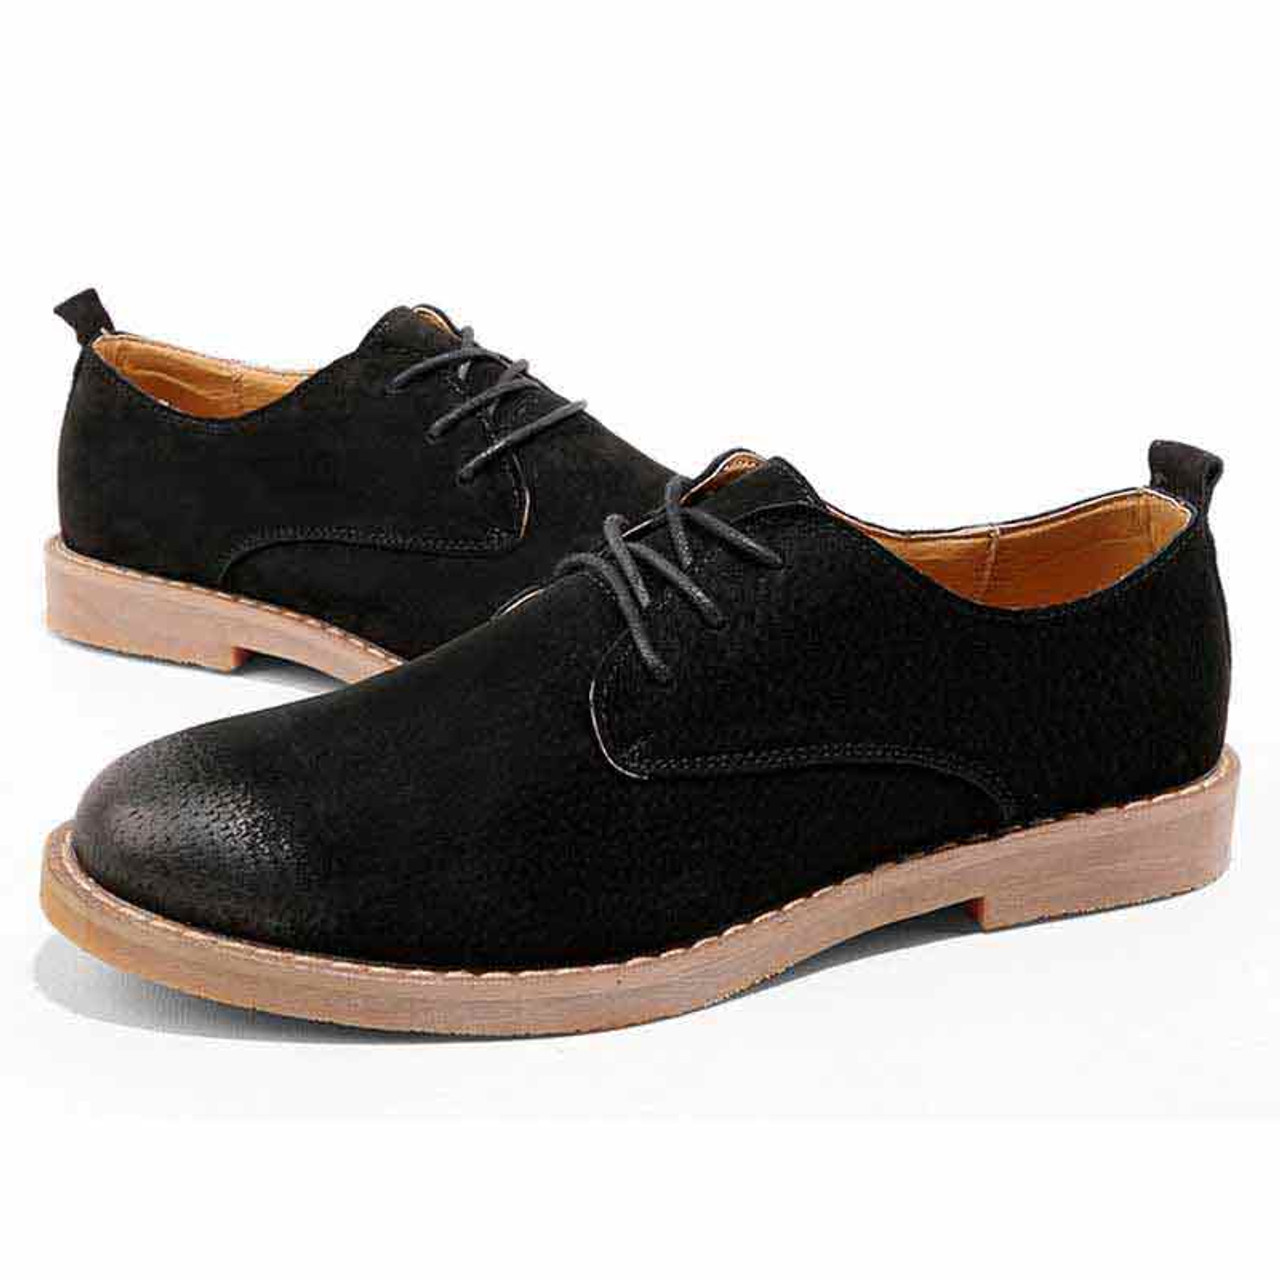 Black retro leather derby dress shoe | Mens dress shoes online 1479MS